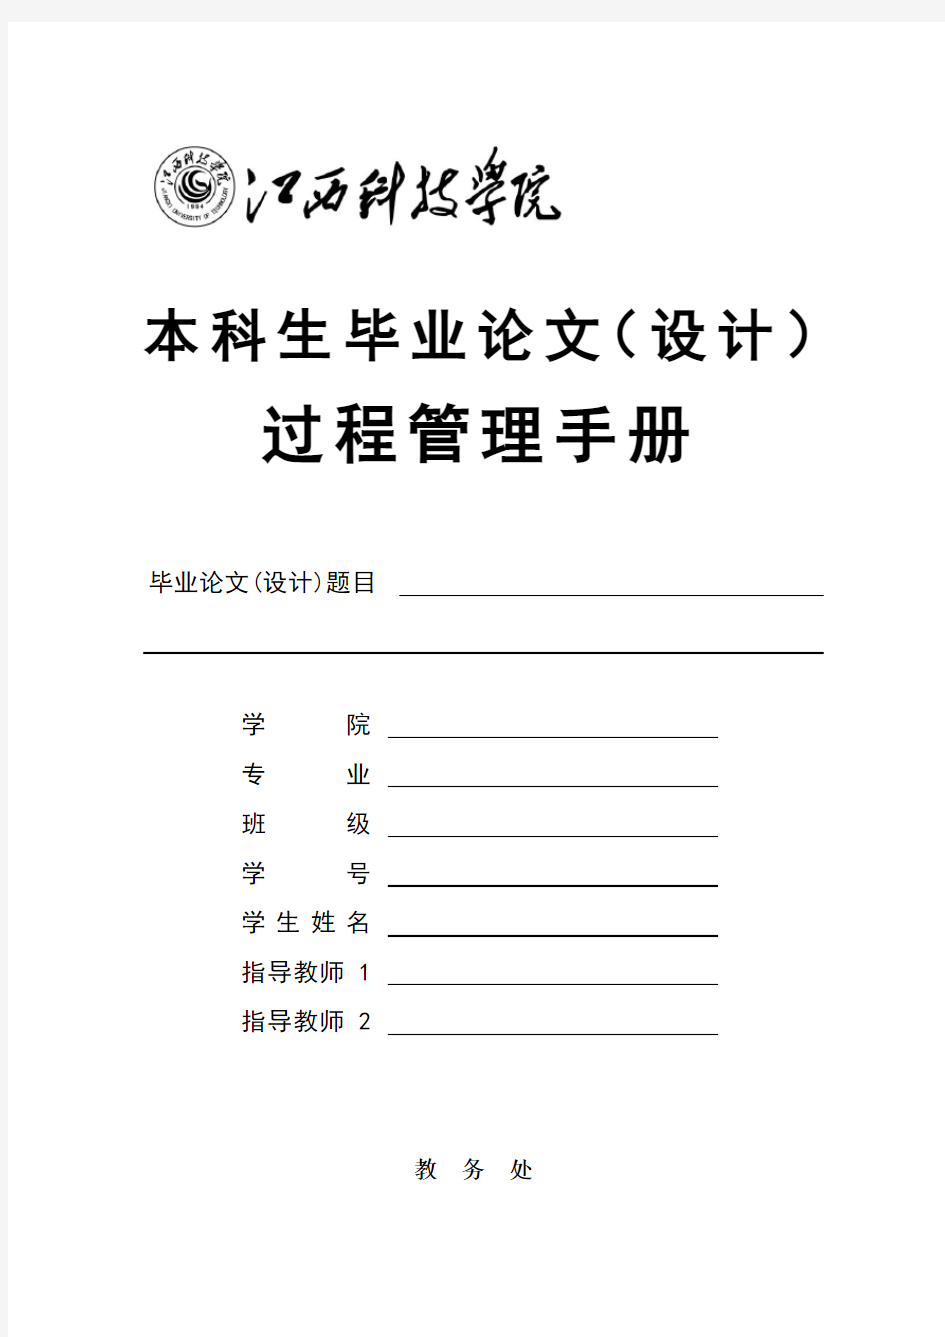 2017年(简化版)江西科技学院本科生毕业设计(论文)过程管理手册